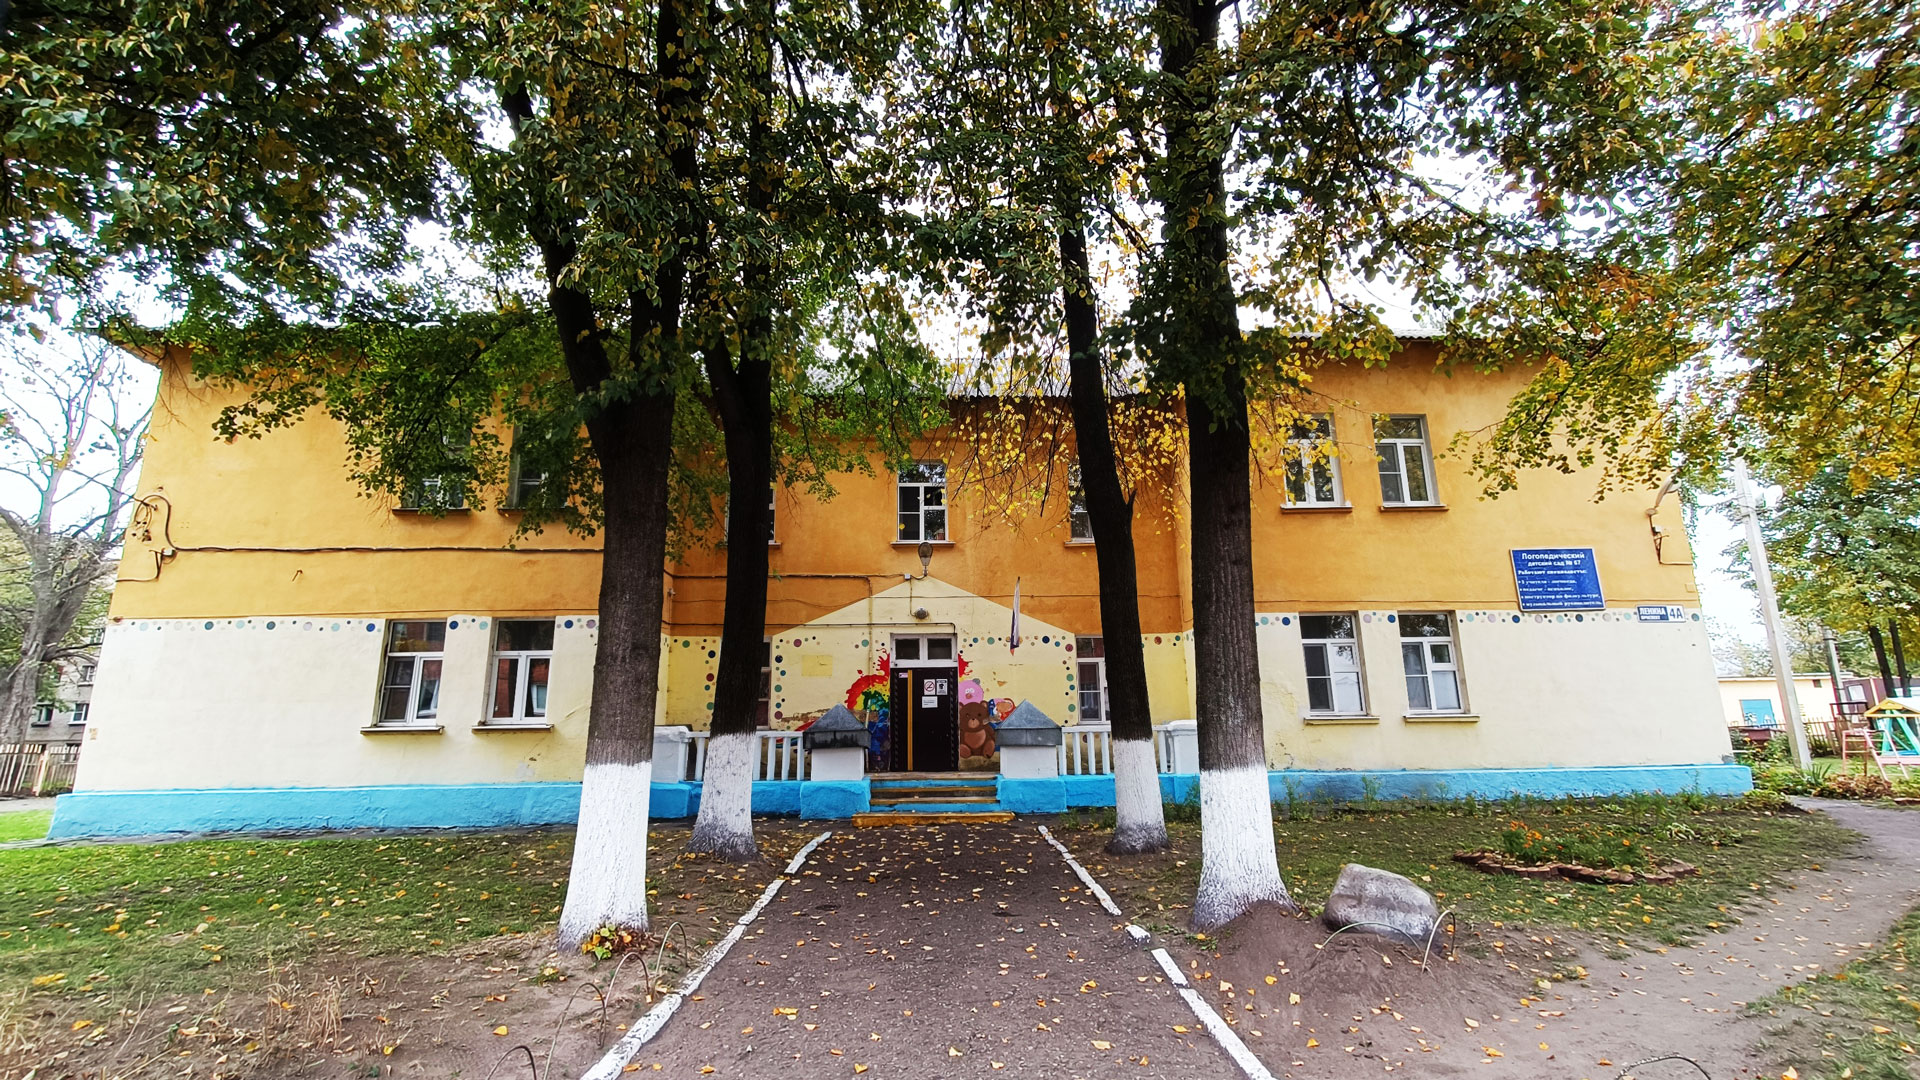 Детский сад 67 Ярославль: общий вид здания.